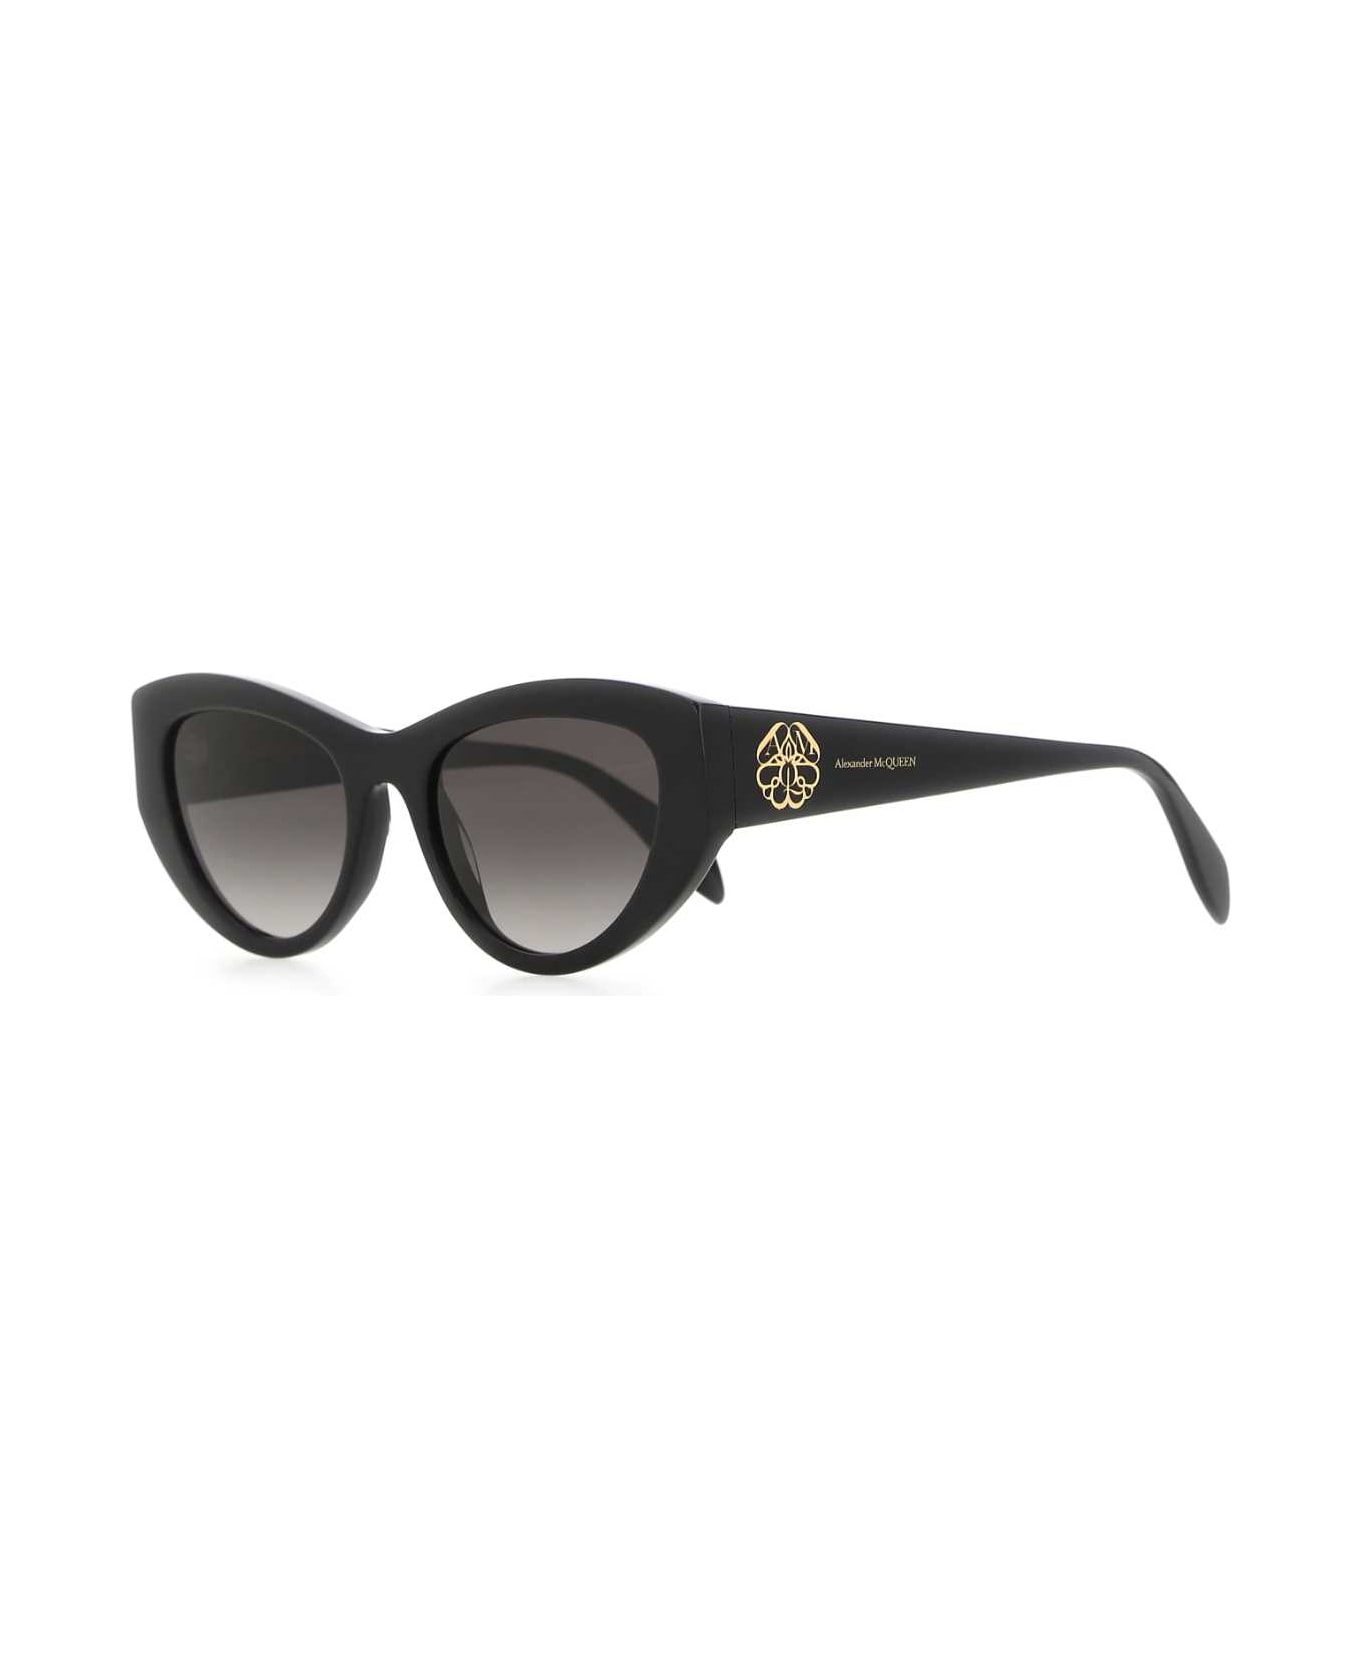 Alexander McQueen Black Acetate Sunglasses - 1053